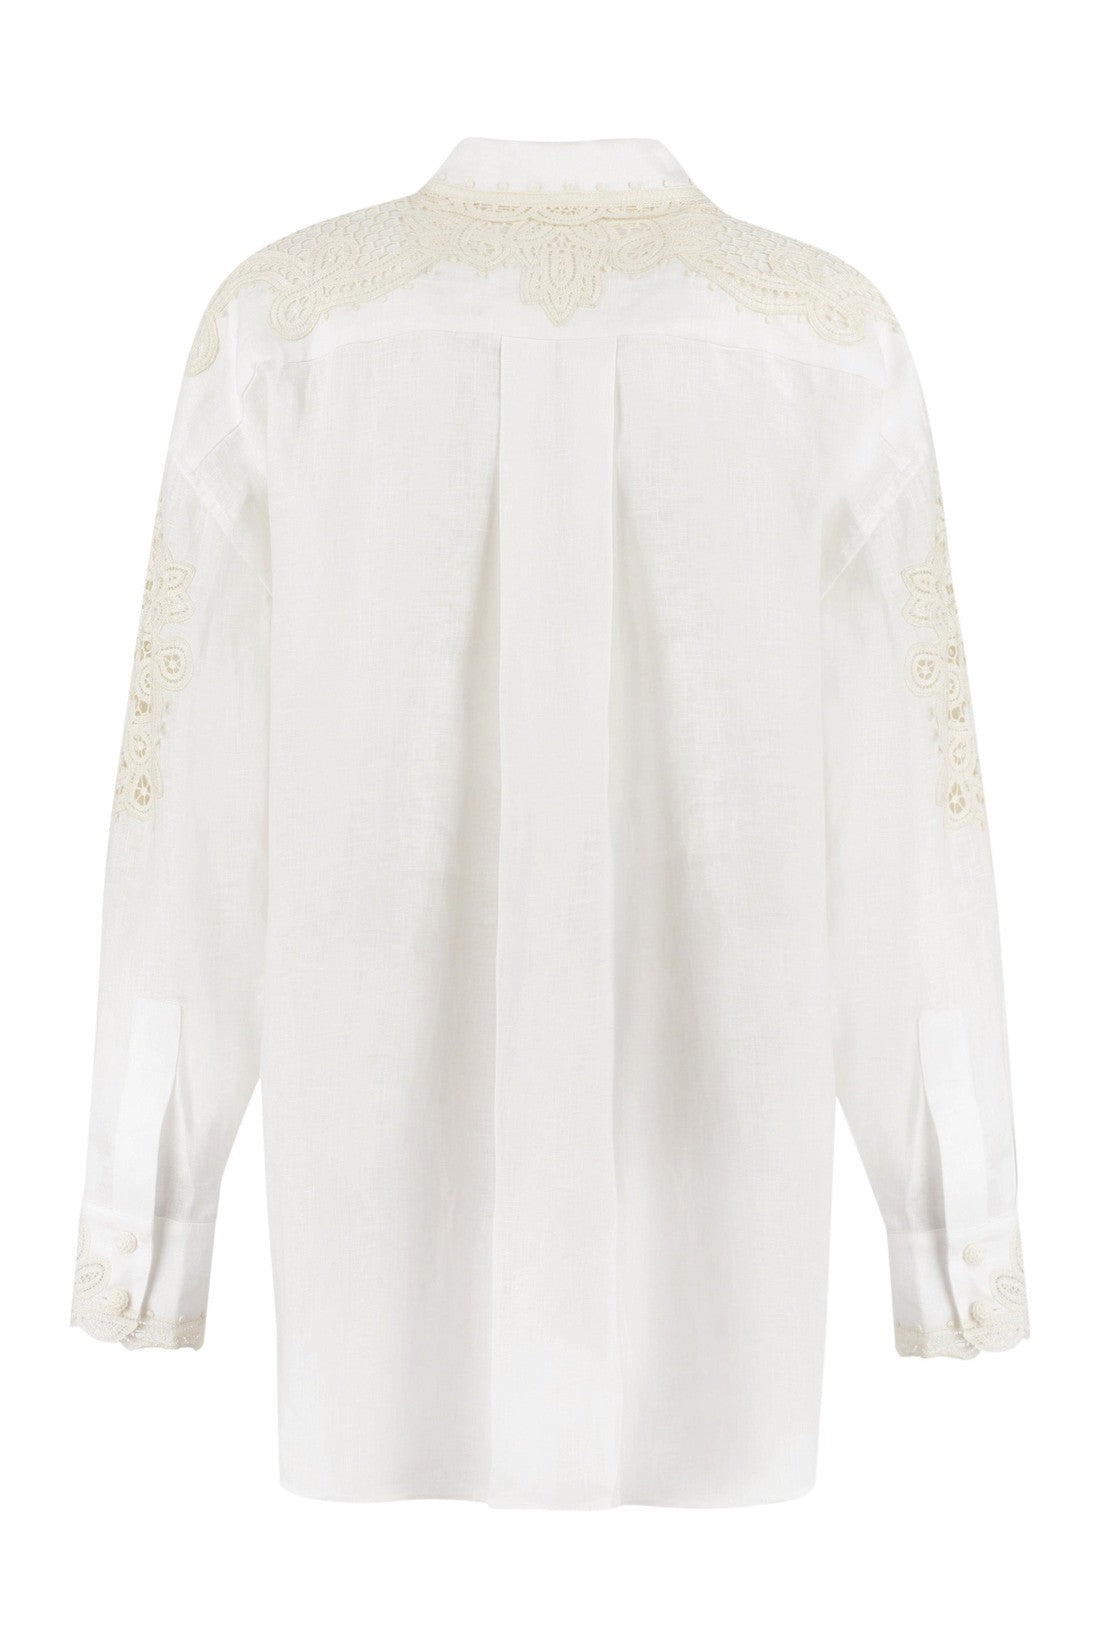 Zimmermann-OUTLET-SALE-Laurel linen shirt-ARCHIVIST